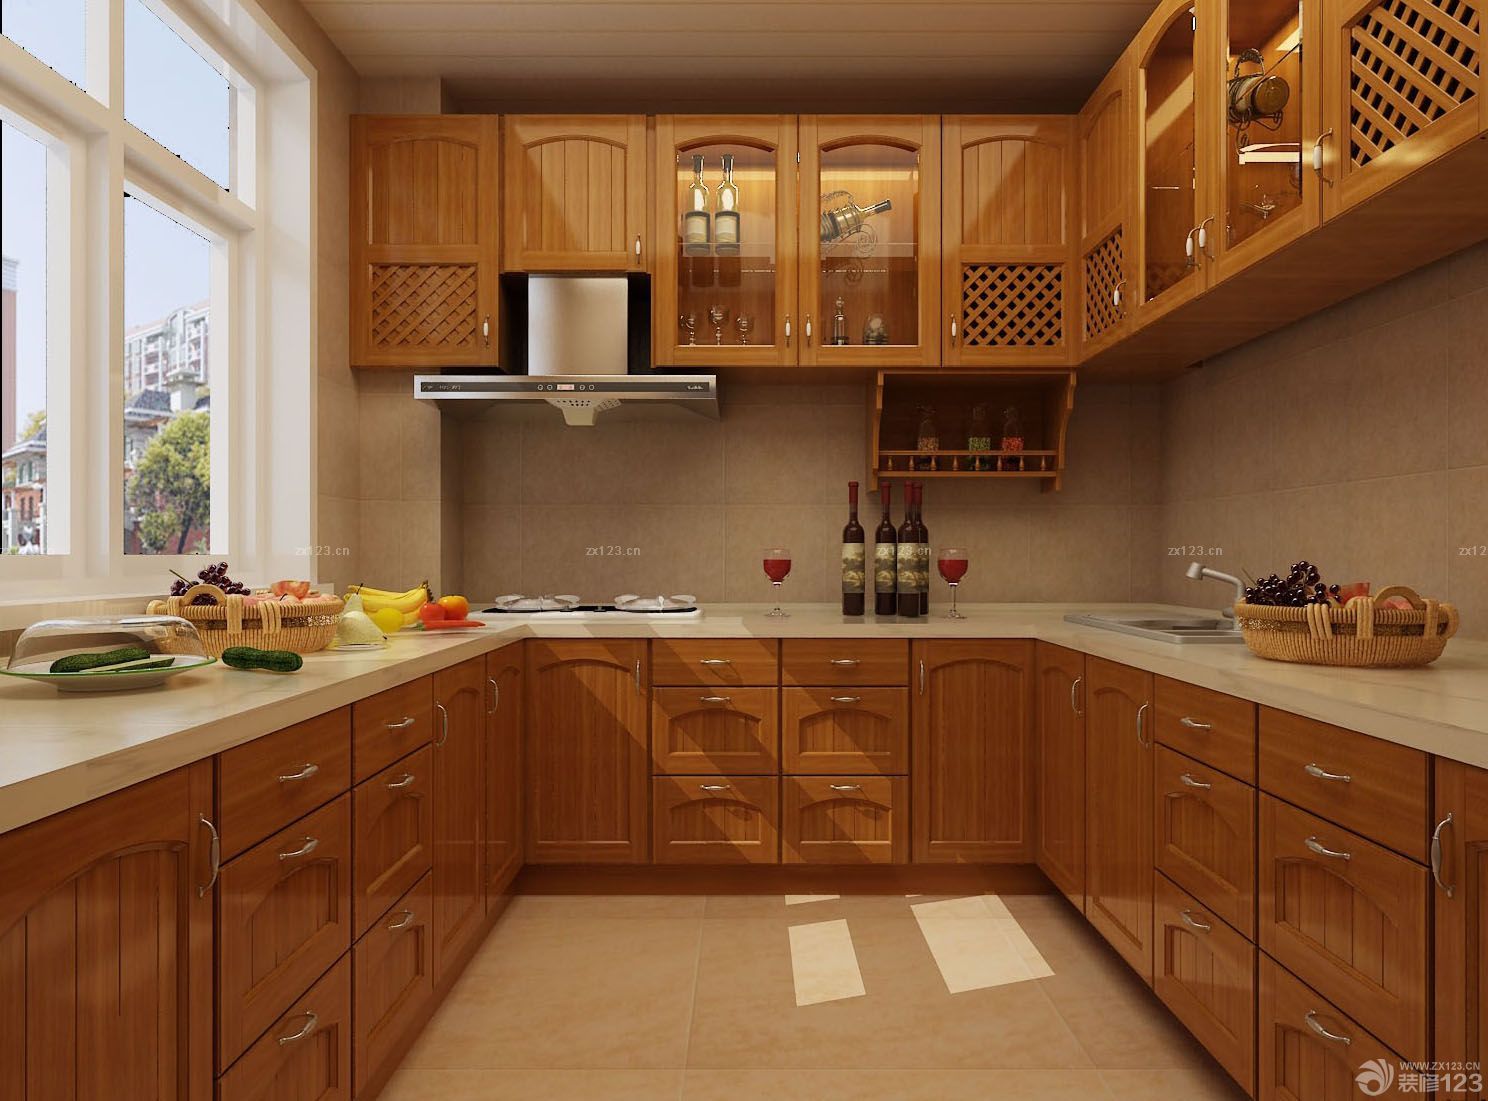 简约欧式风格厨房橱柜颜色效果图 